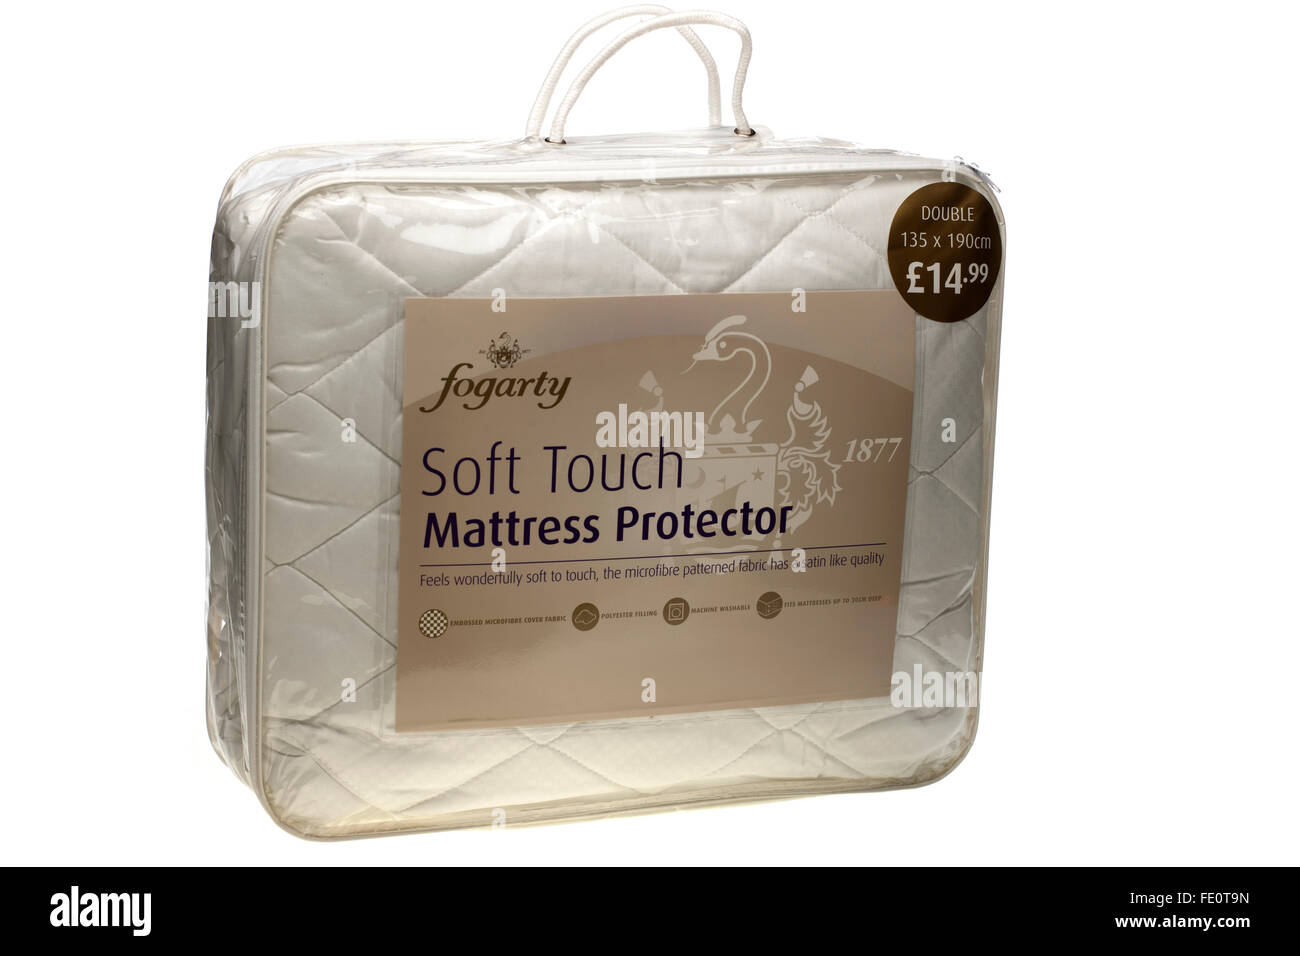 Fogarty soft touch doppio 135 cm per 190 cm materasso protector al prezzo di 14 sterline e 99 pence Foto Stock